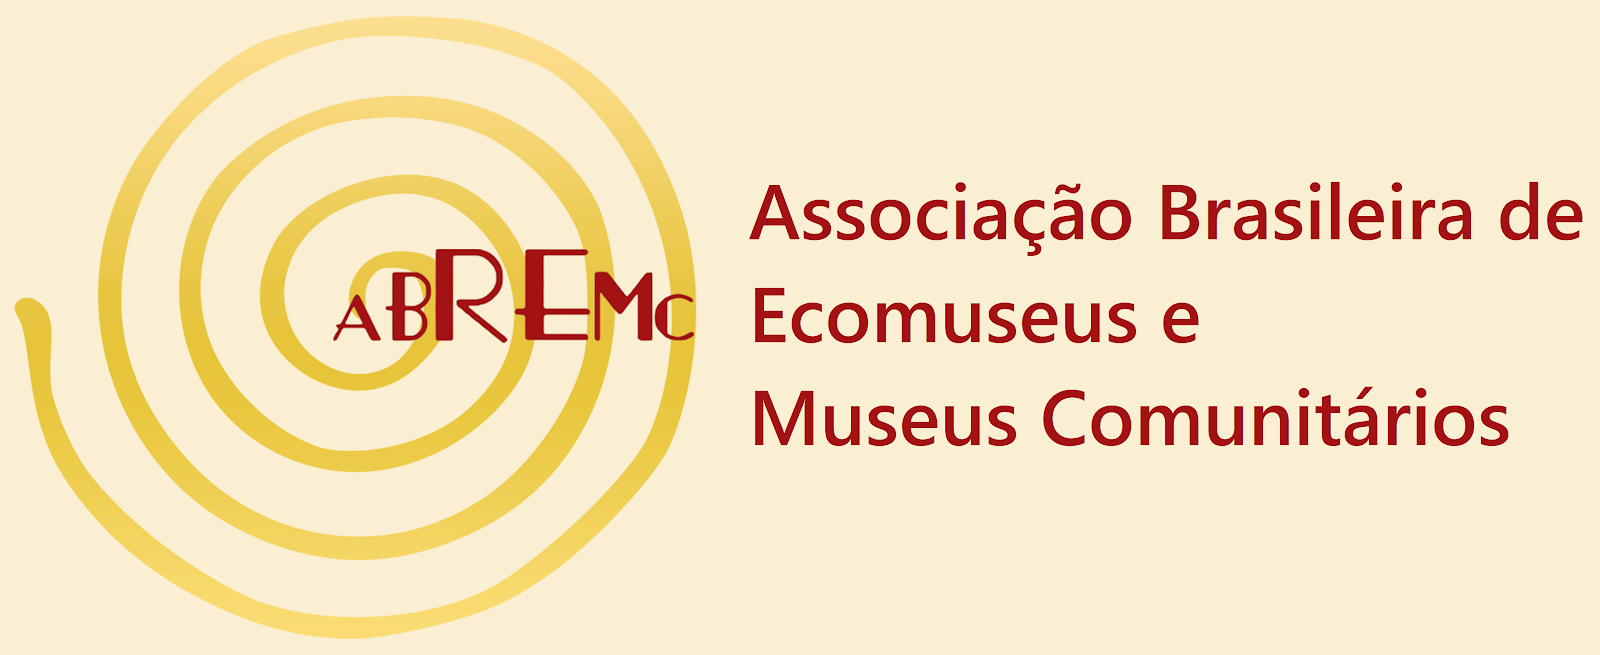 Abremc - Associação Brasileira de Ecomuseus e Museus Comunitários